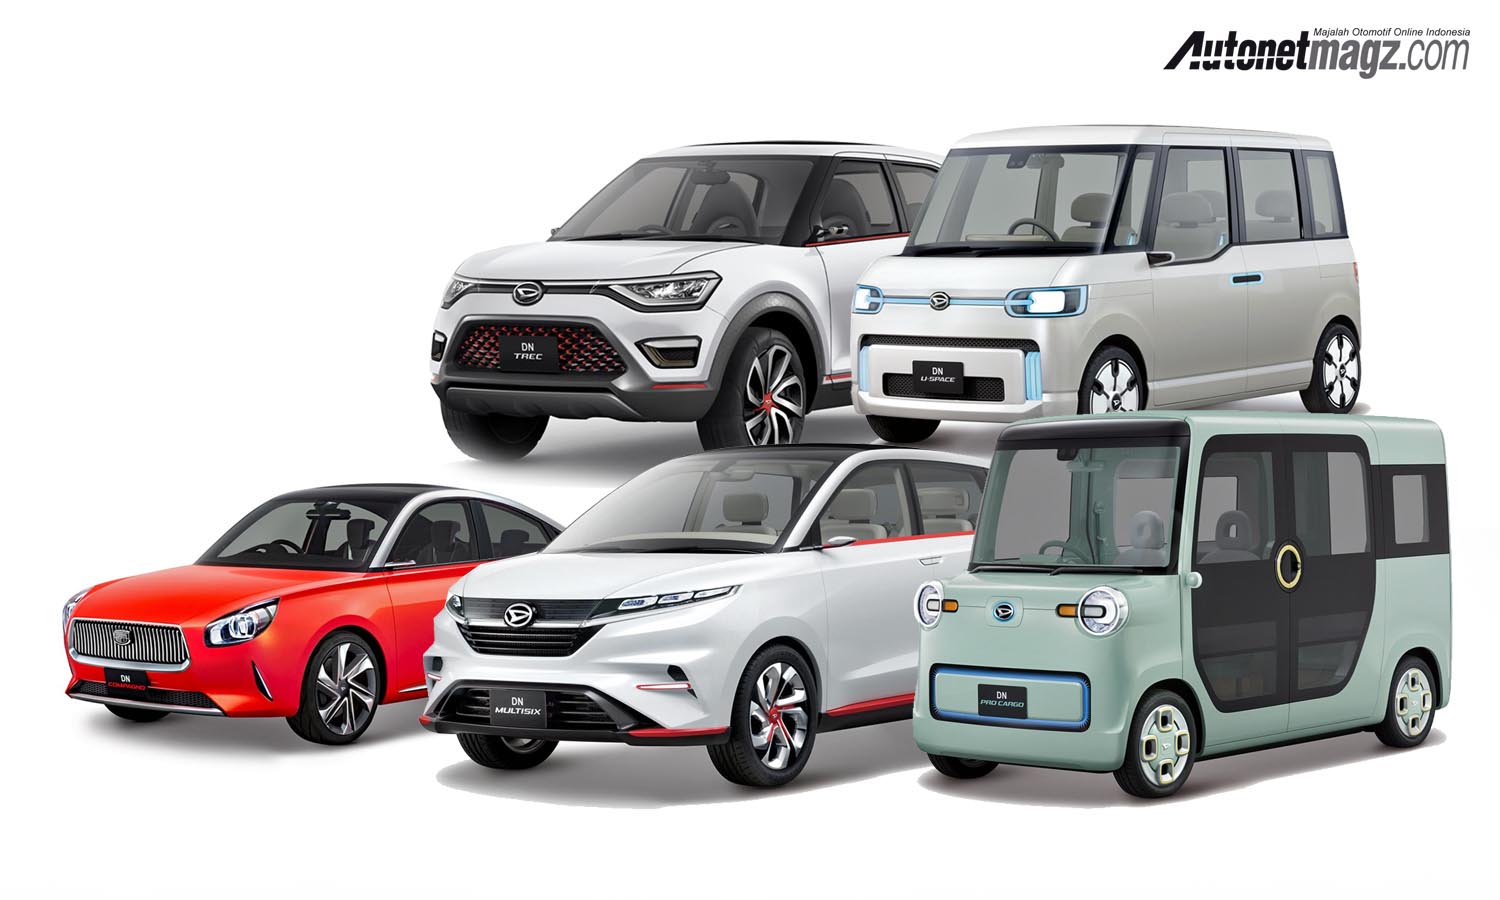 Berita, konsep daihatsu: Barisan Mobil Konsep Daihatsu Siap Menuju Tokyo Motor Show 2017